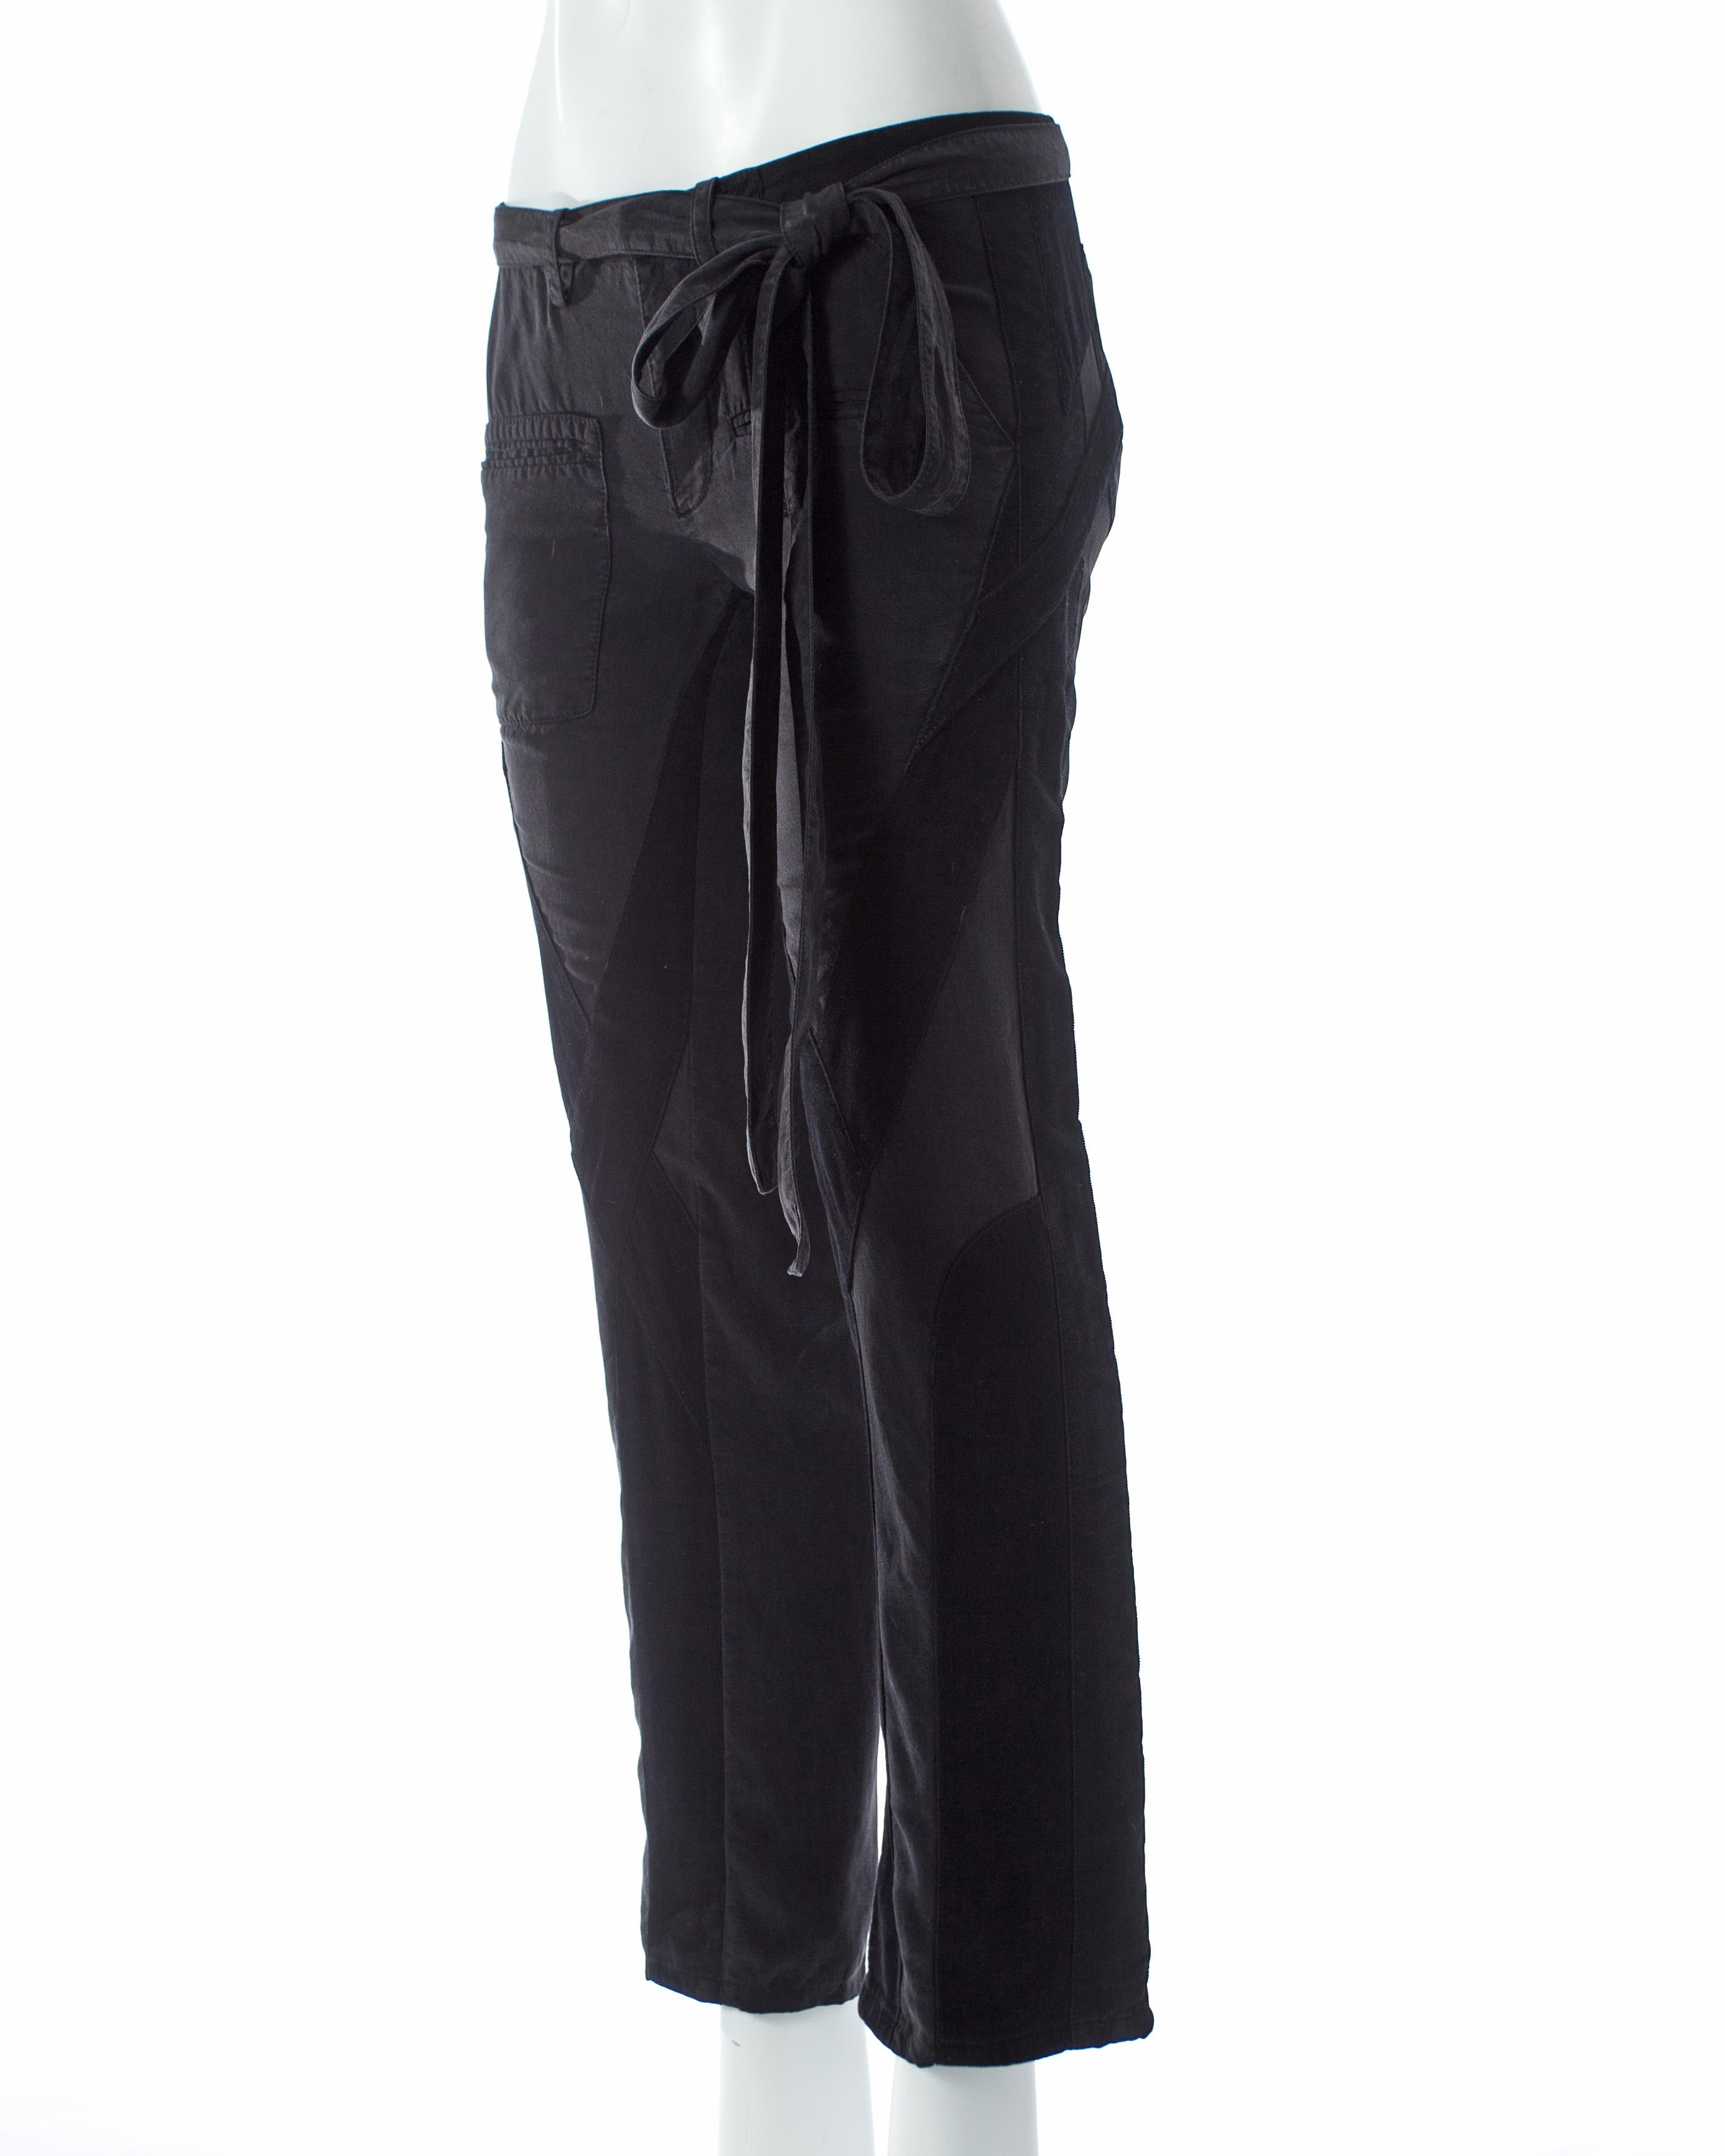 Black Balenciaga Nicolas Ghesquière black cotton and corduroy cargo pants, SS 2002